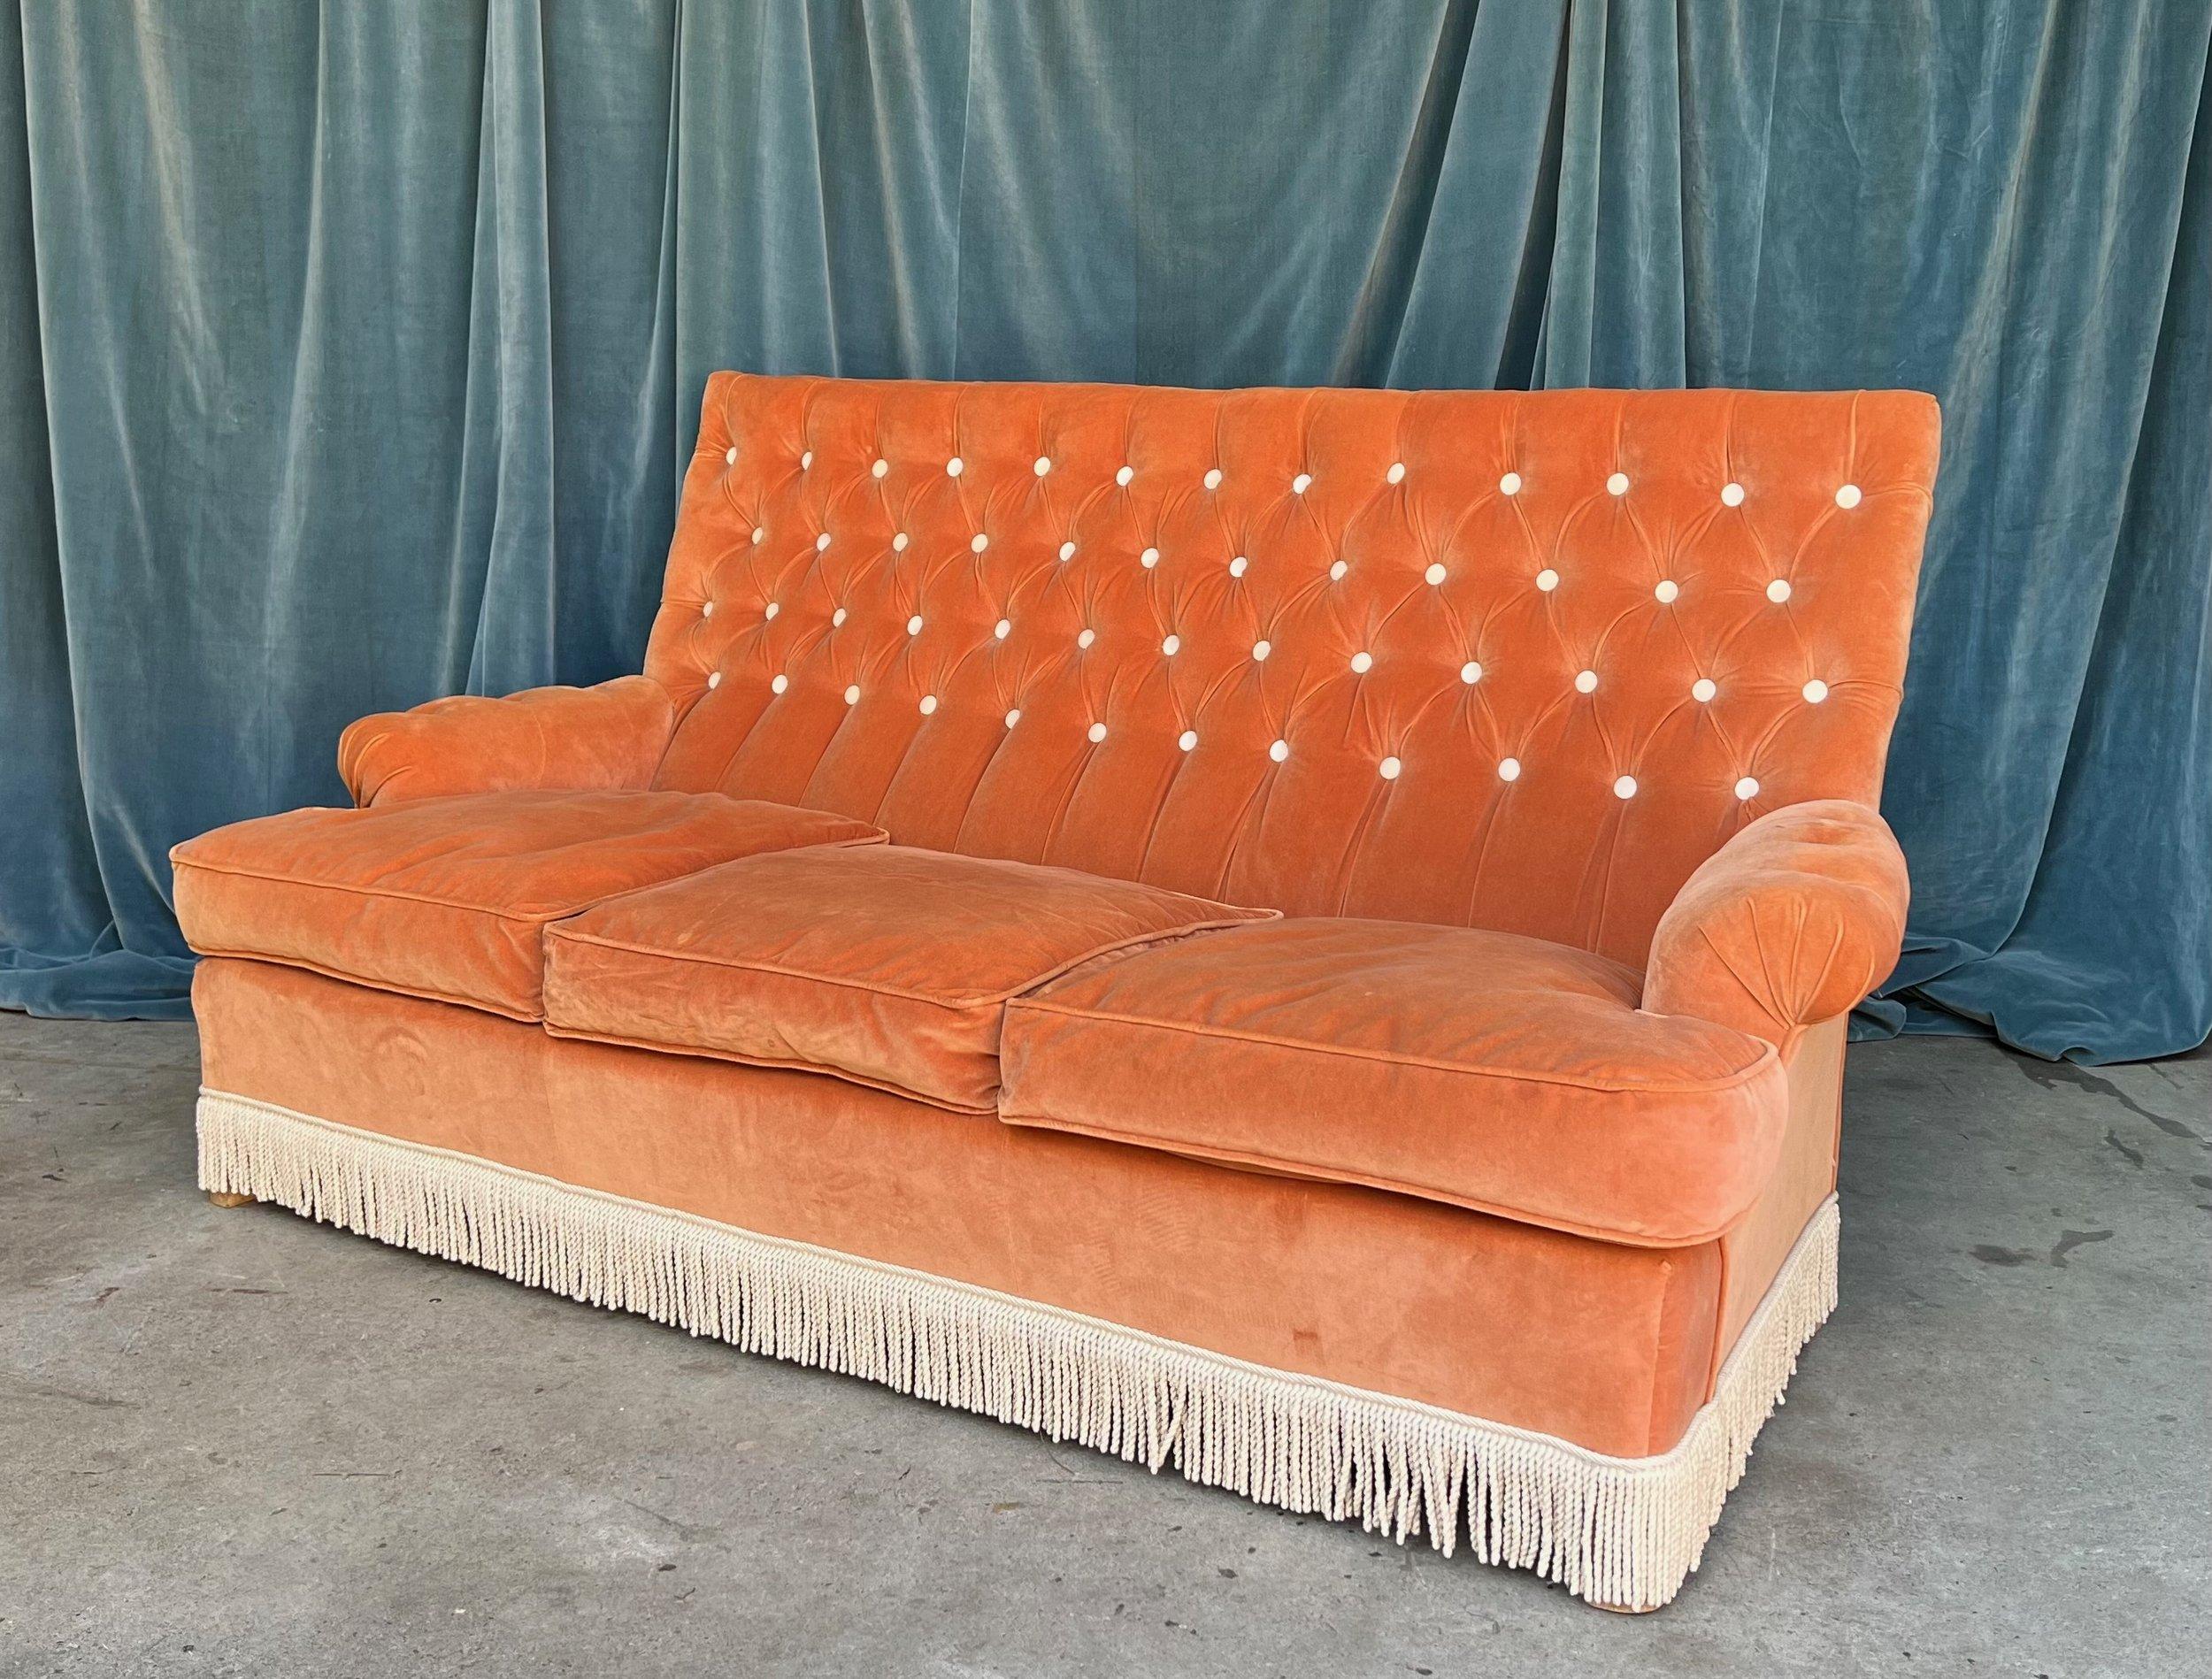 Dieses atemberaubende französische Hochlehner-Sofa im opulenten Napoleon-III-Stil ist die Verkörperung von Luxus und Eleganz. Die Rückenlehne und die Armlehnen des Sofas sind mit einem orangefarbenen Samt gepolstert und haben ein Rautenmuster, das